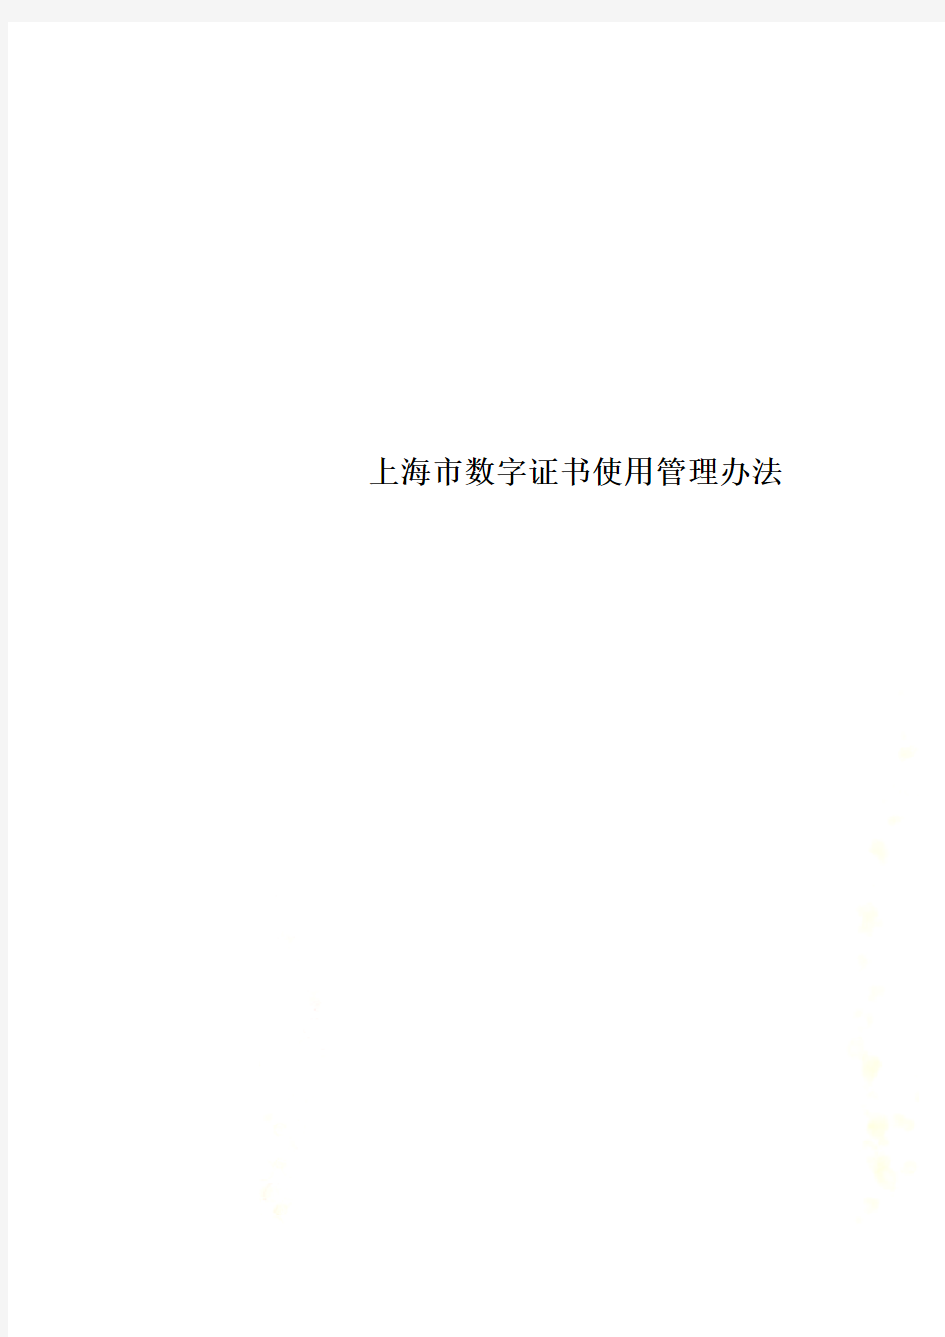 上海市数字证书使用管理办法